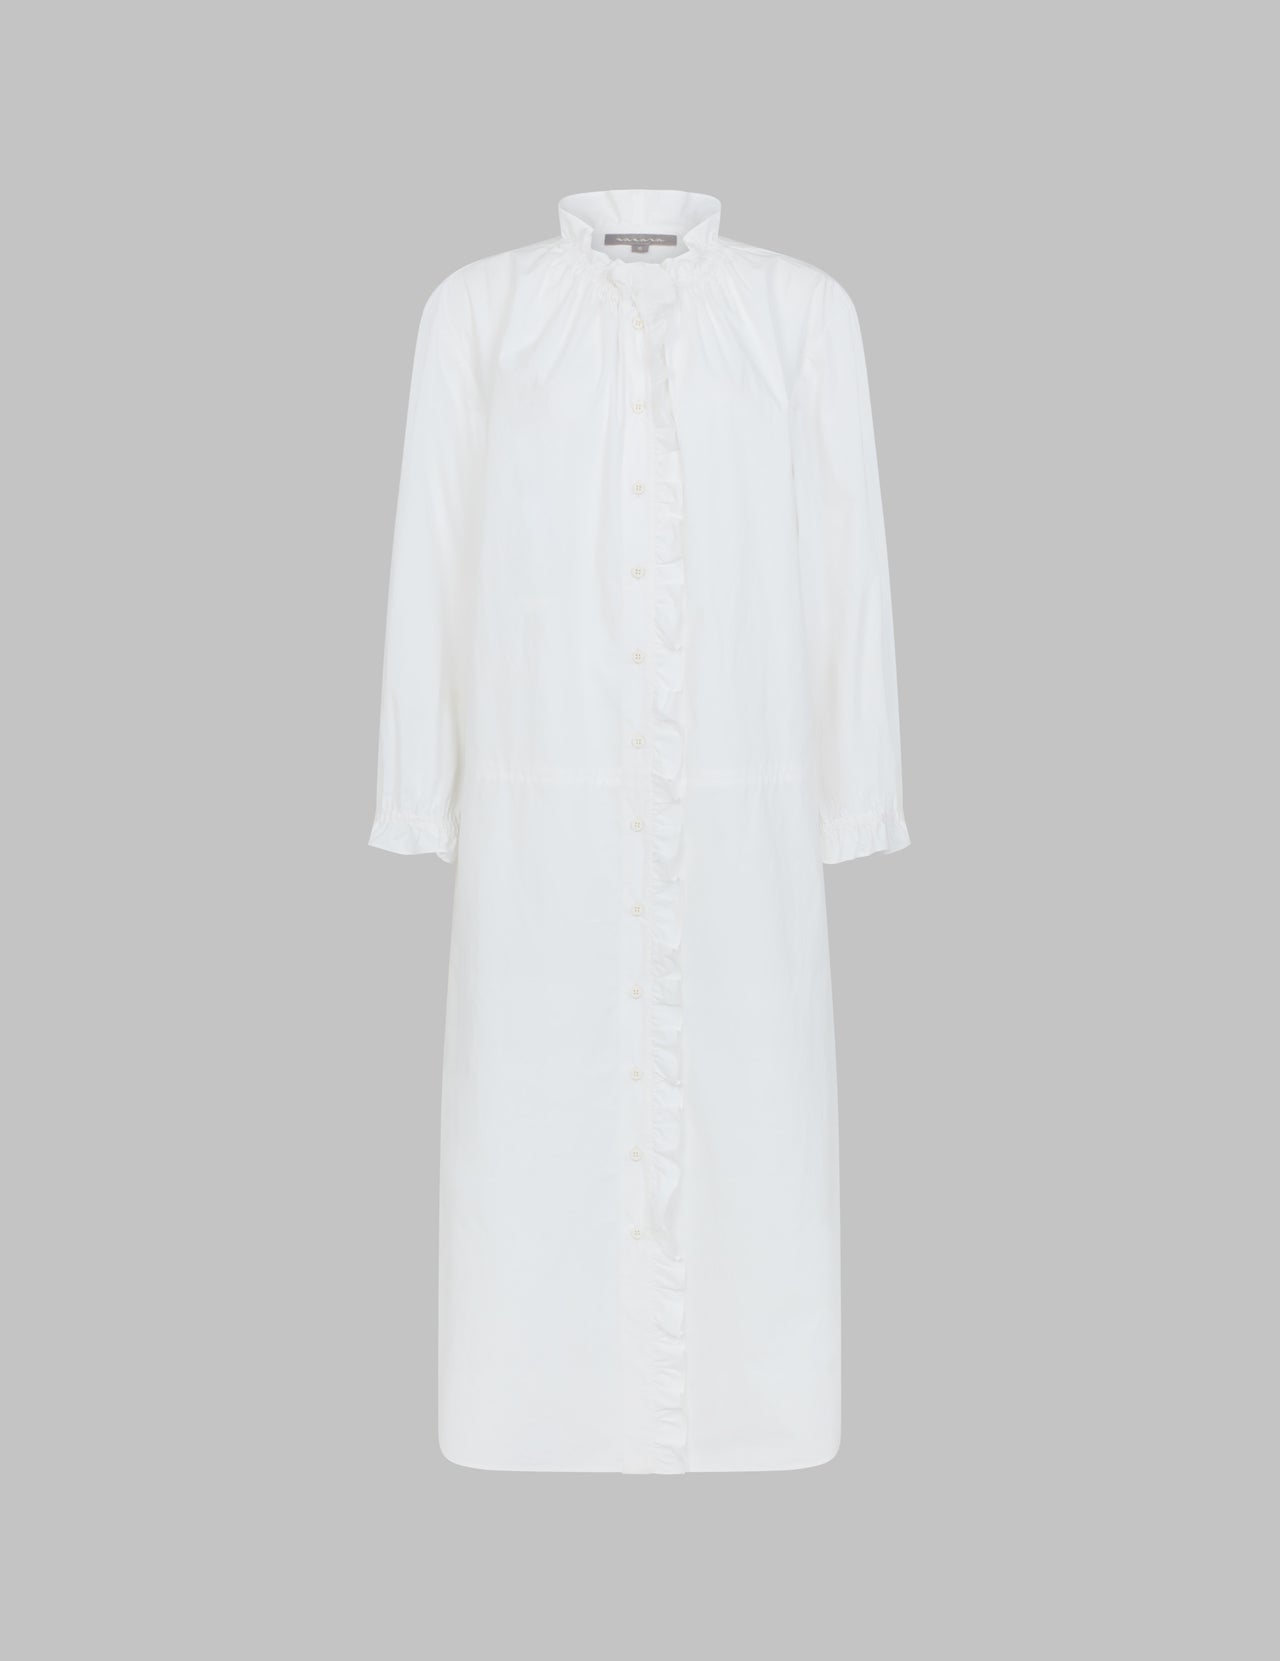  White Crush Cotton Ruffle Relaxed Shirt Dress | Varana 